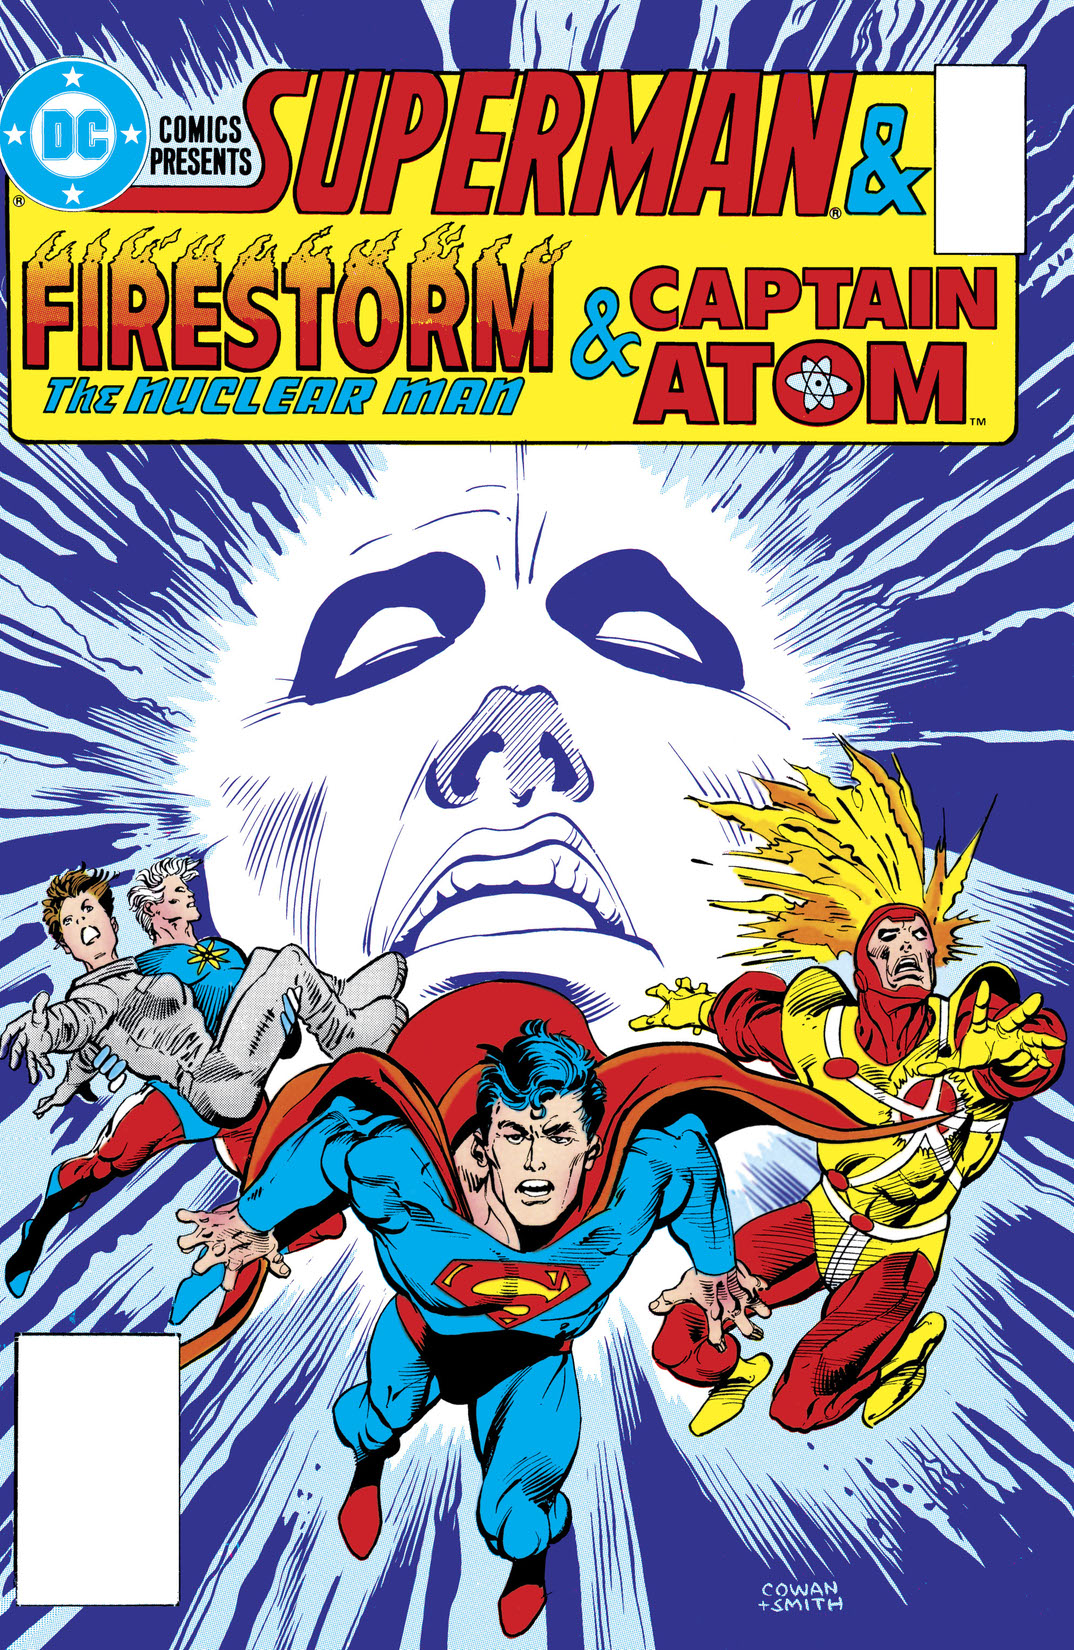 DC Comics Presents (1978-1986) #90 preview images